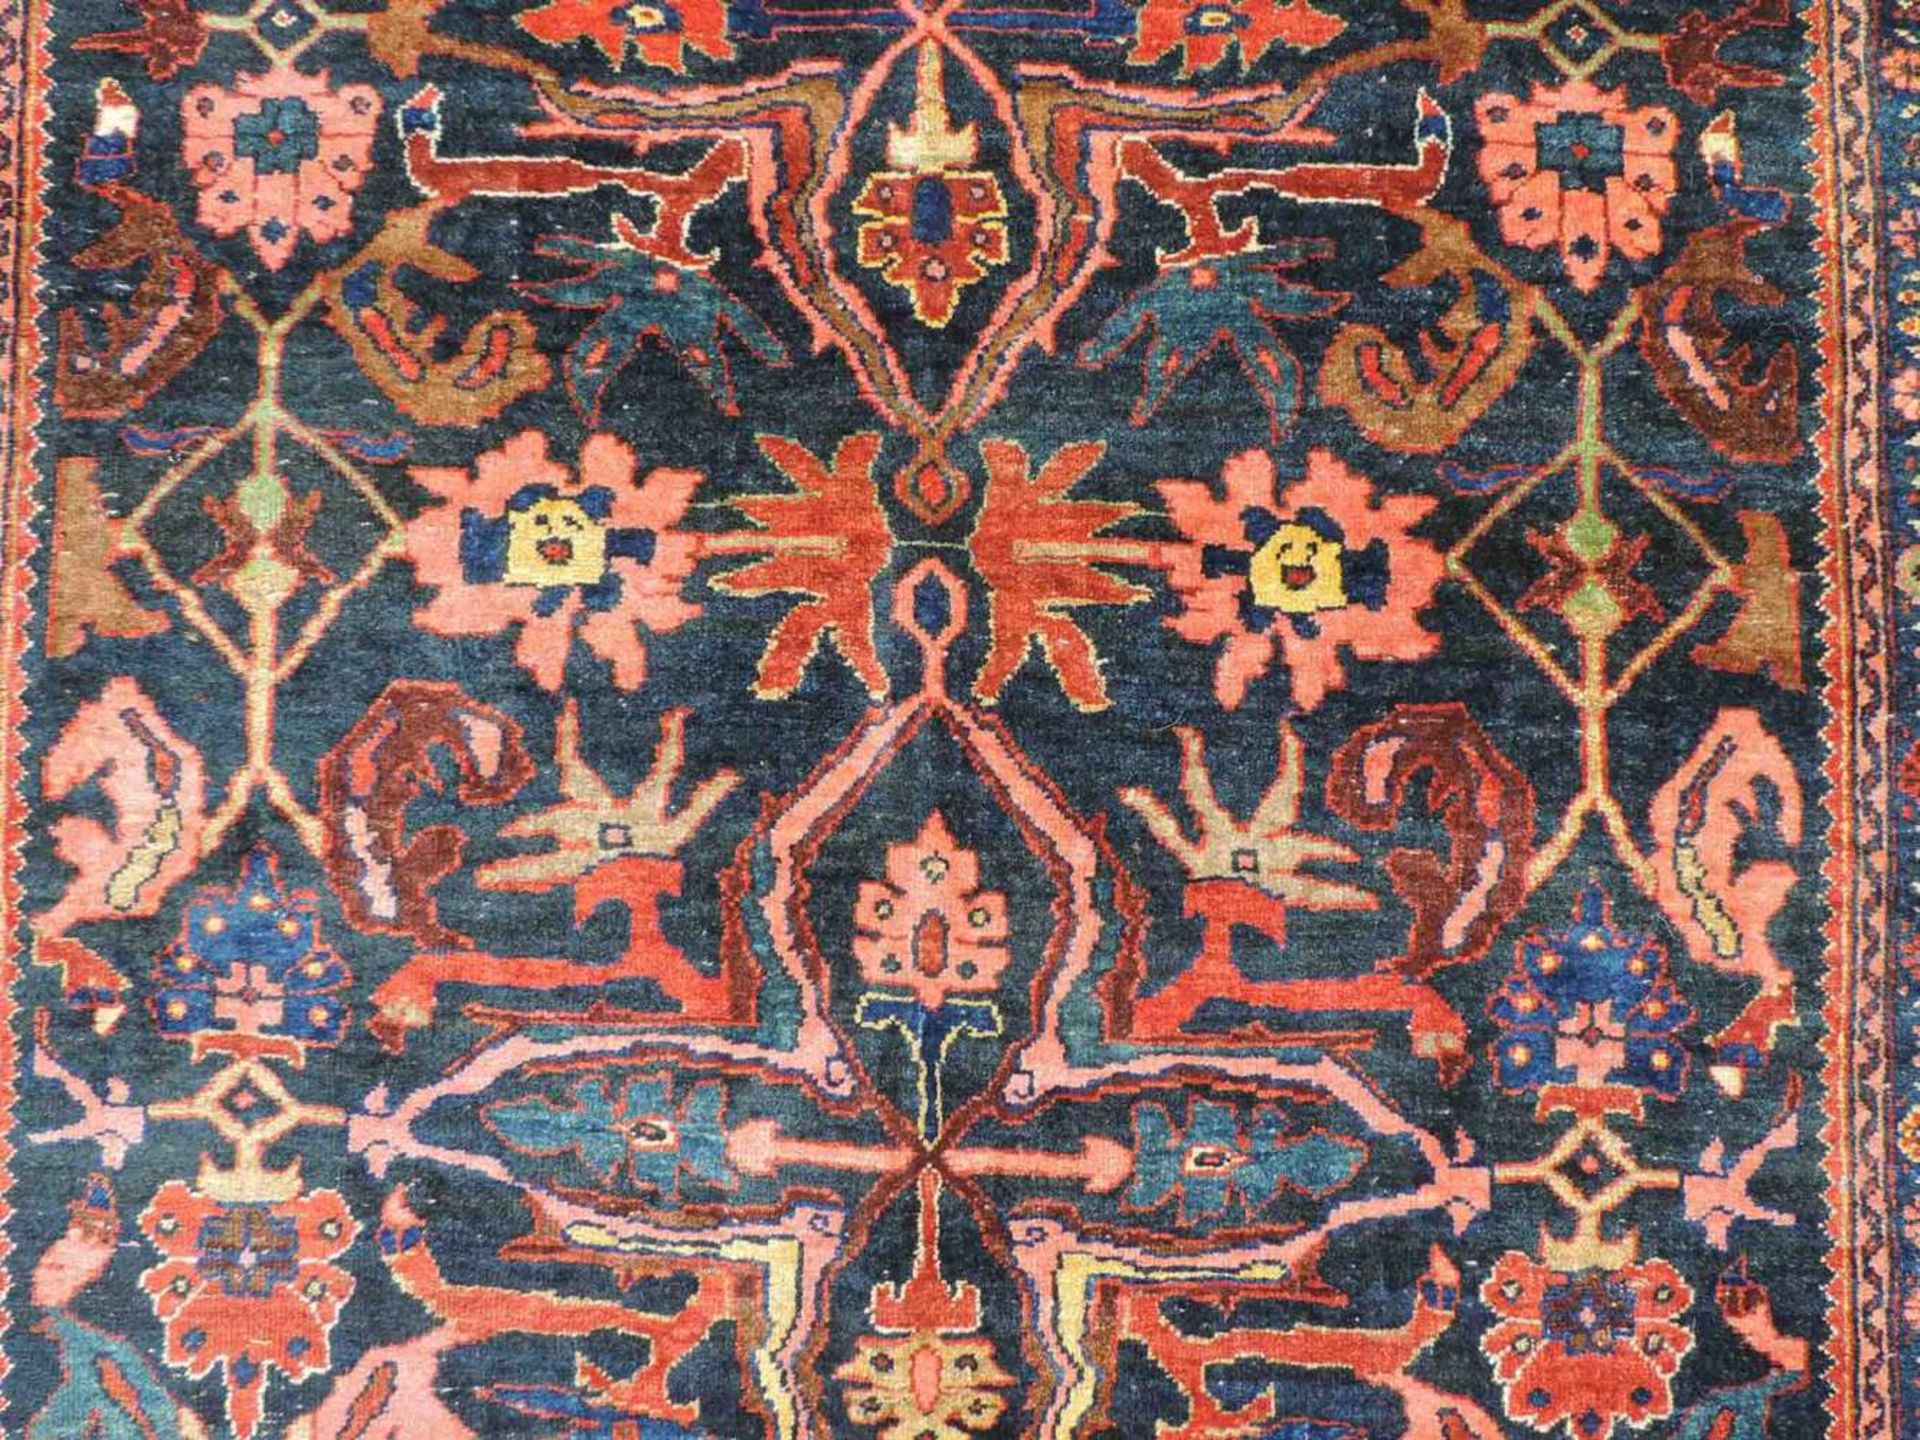 Bidjar Dorfteppich, Iran. Antik, um 1900. 214 cm x 160 cm. Handgeknüpft in Persien. Noch Wolle auf - Image 9 of 11